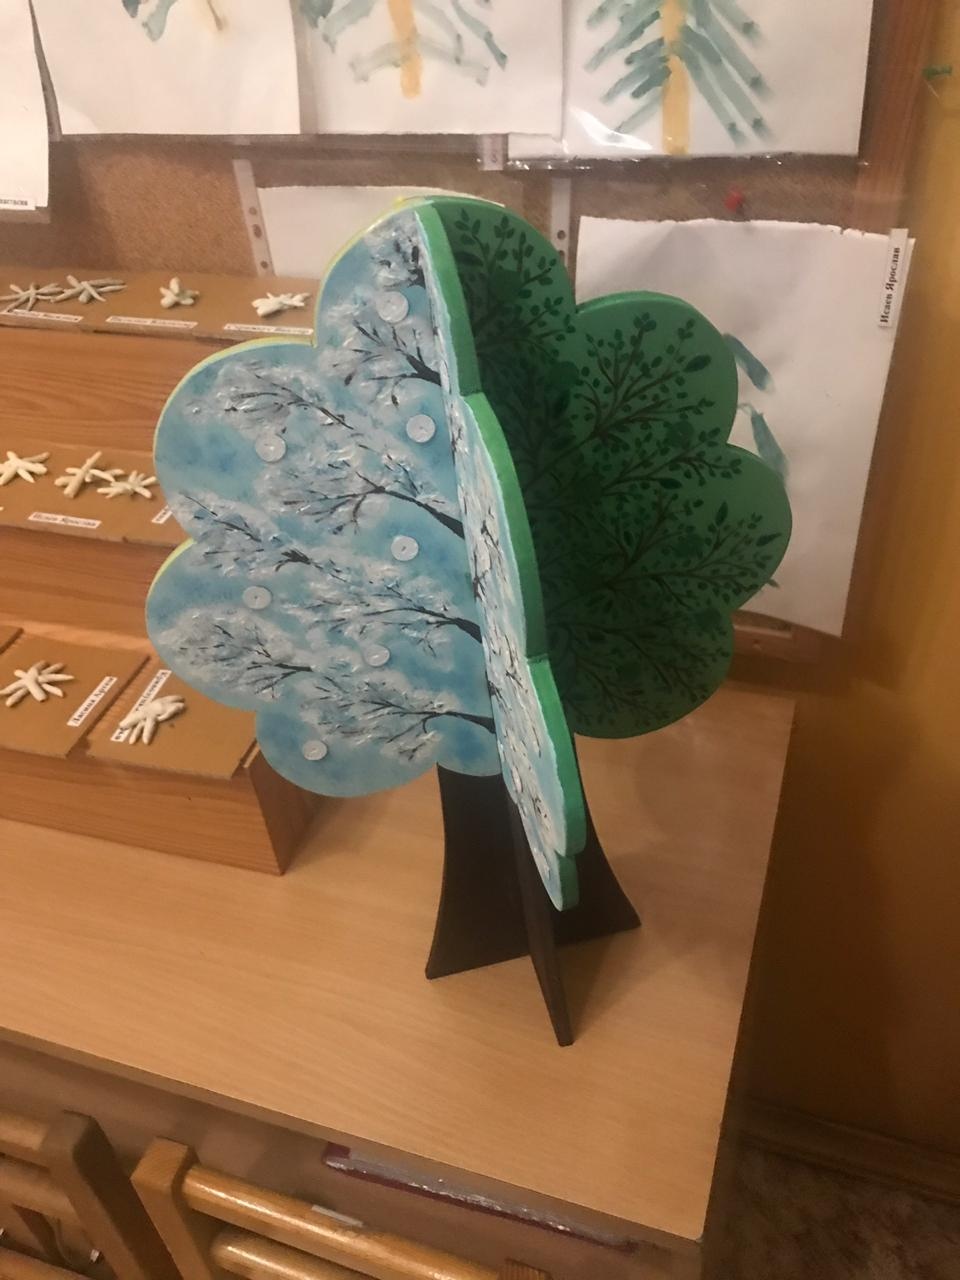 نموذج شجرة ديكور مقطوع بالليزر